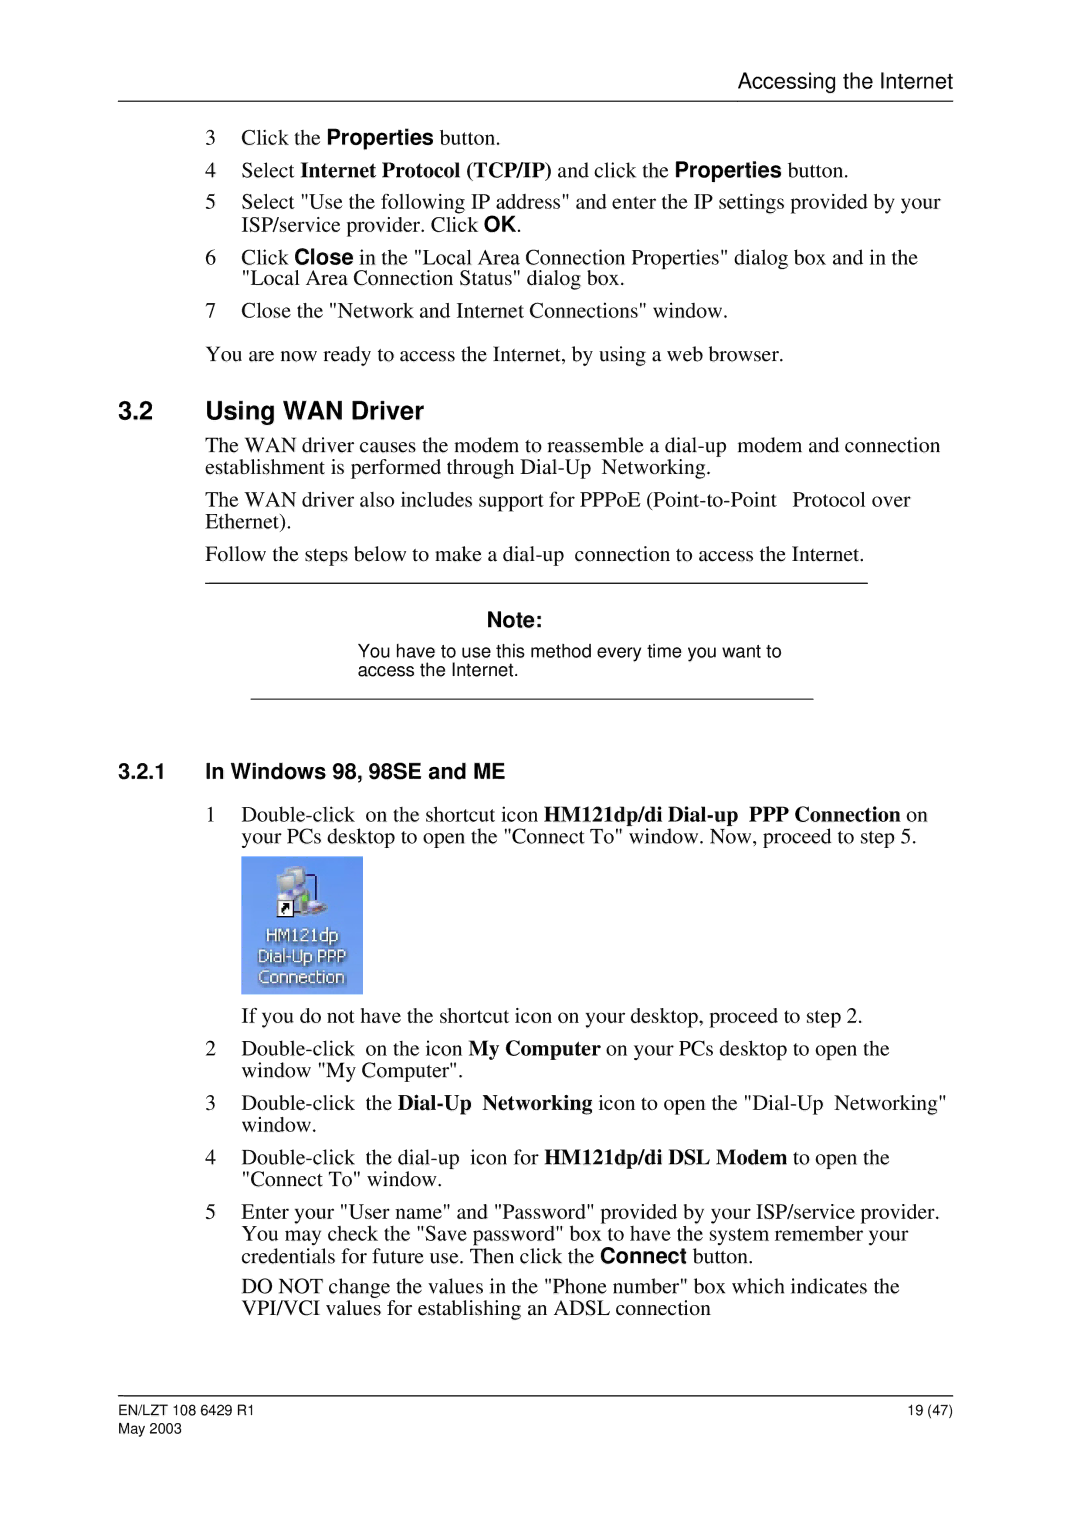 Ericsson HM121dp, HM121di manual Using WAN Driver 